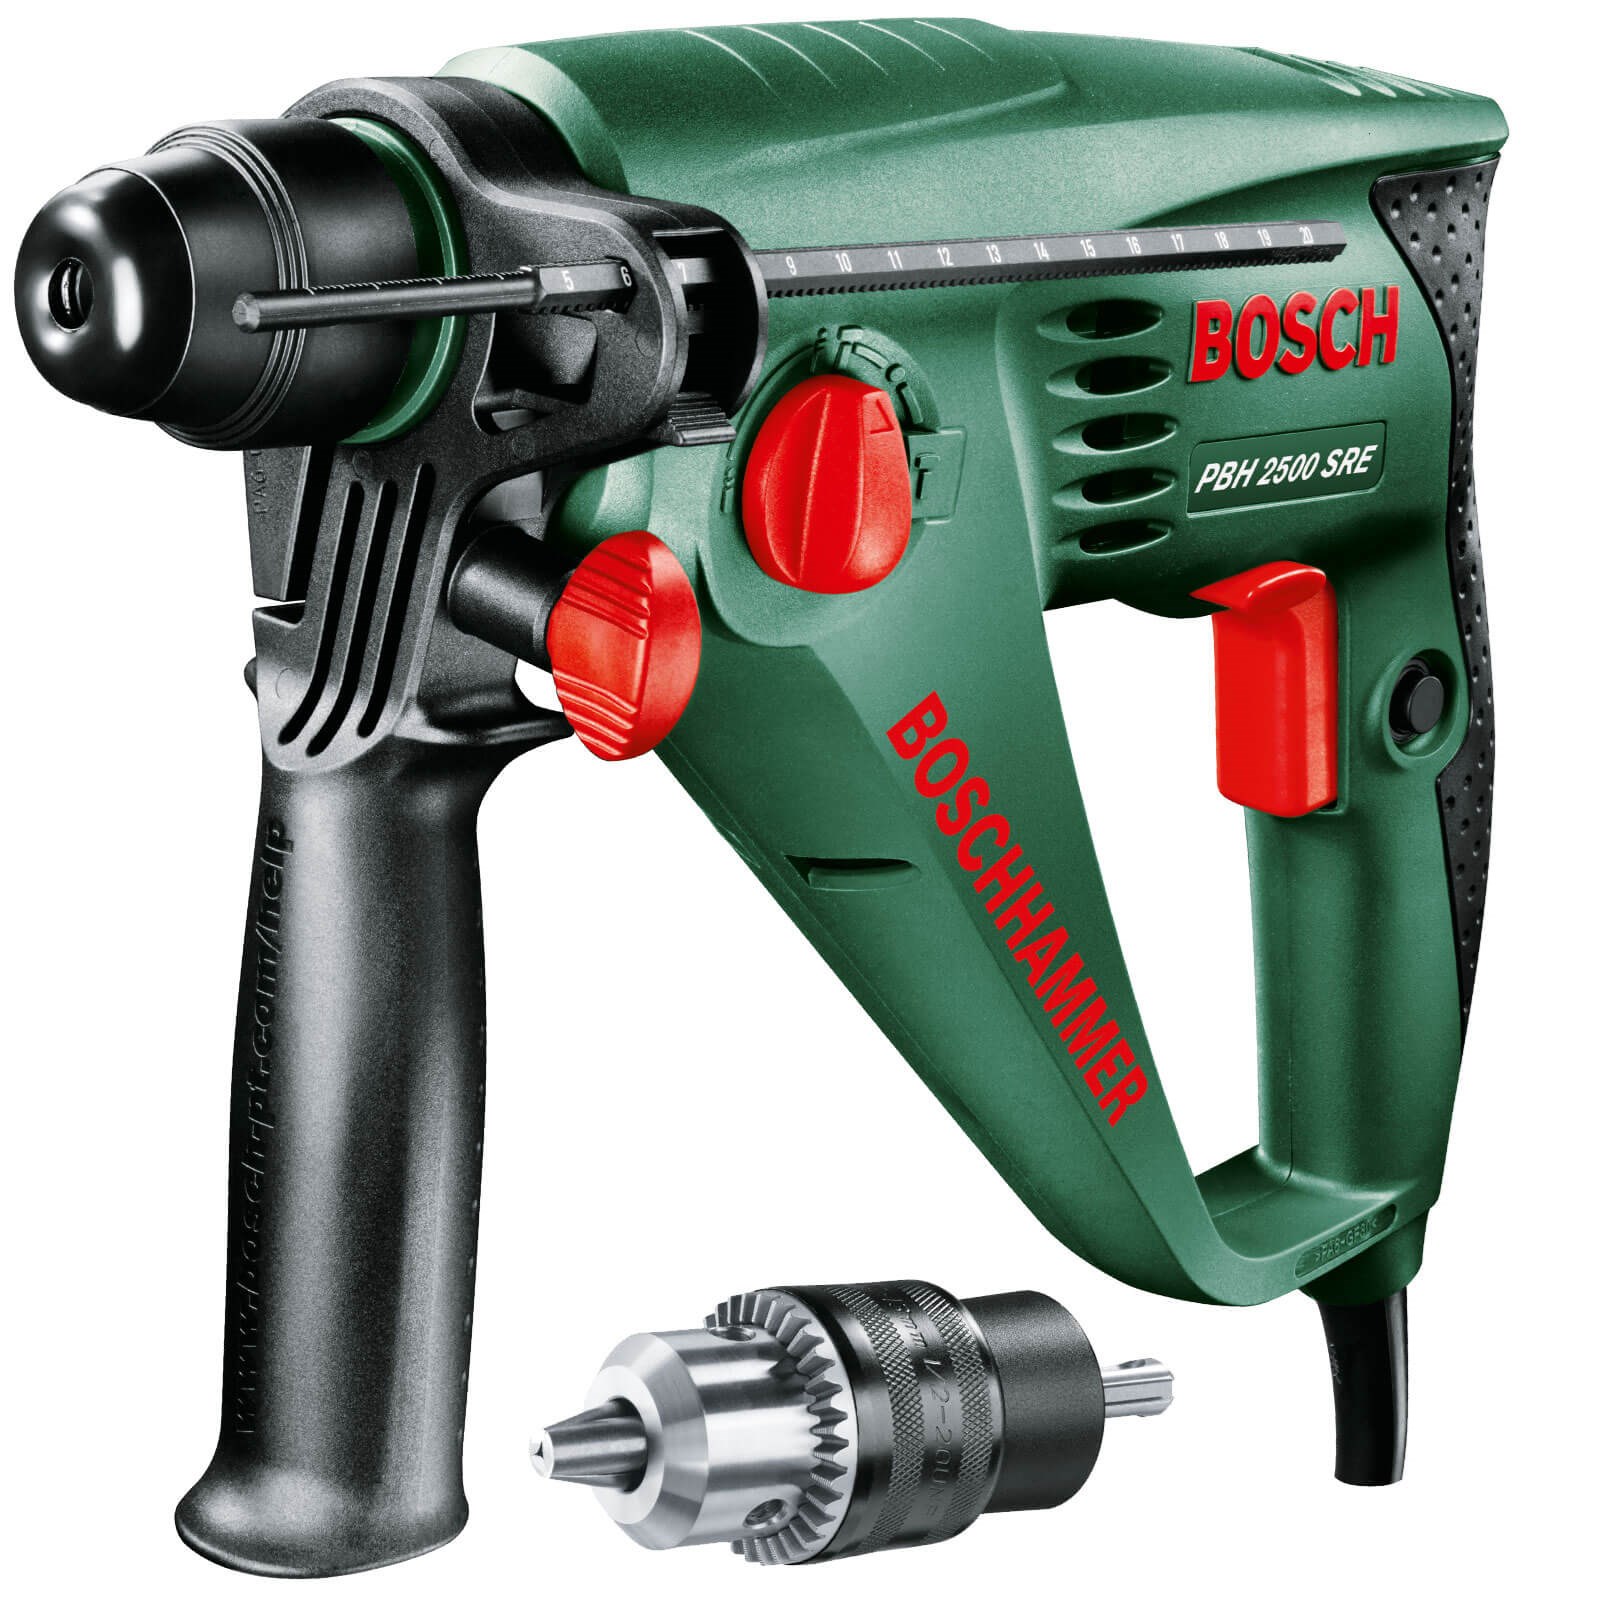 Bosch 2500 SRE SDS Rotary Hammer Drill + Keyed Chuck | SDS Drills